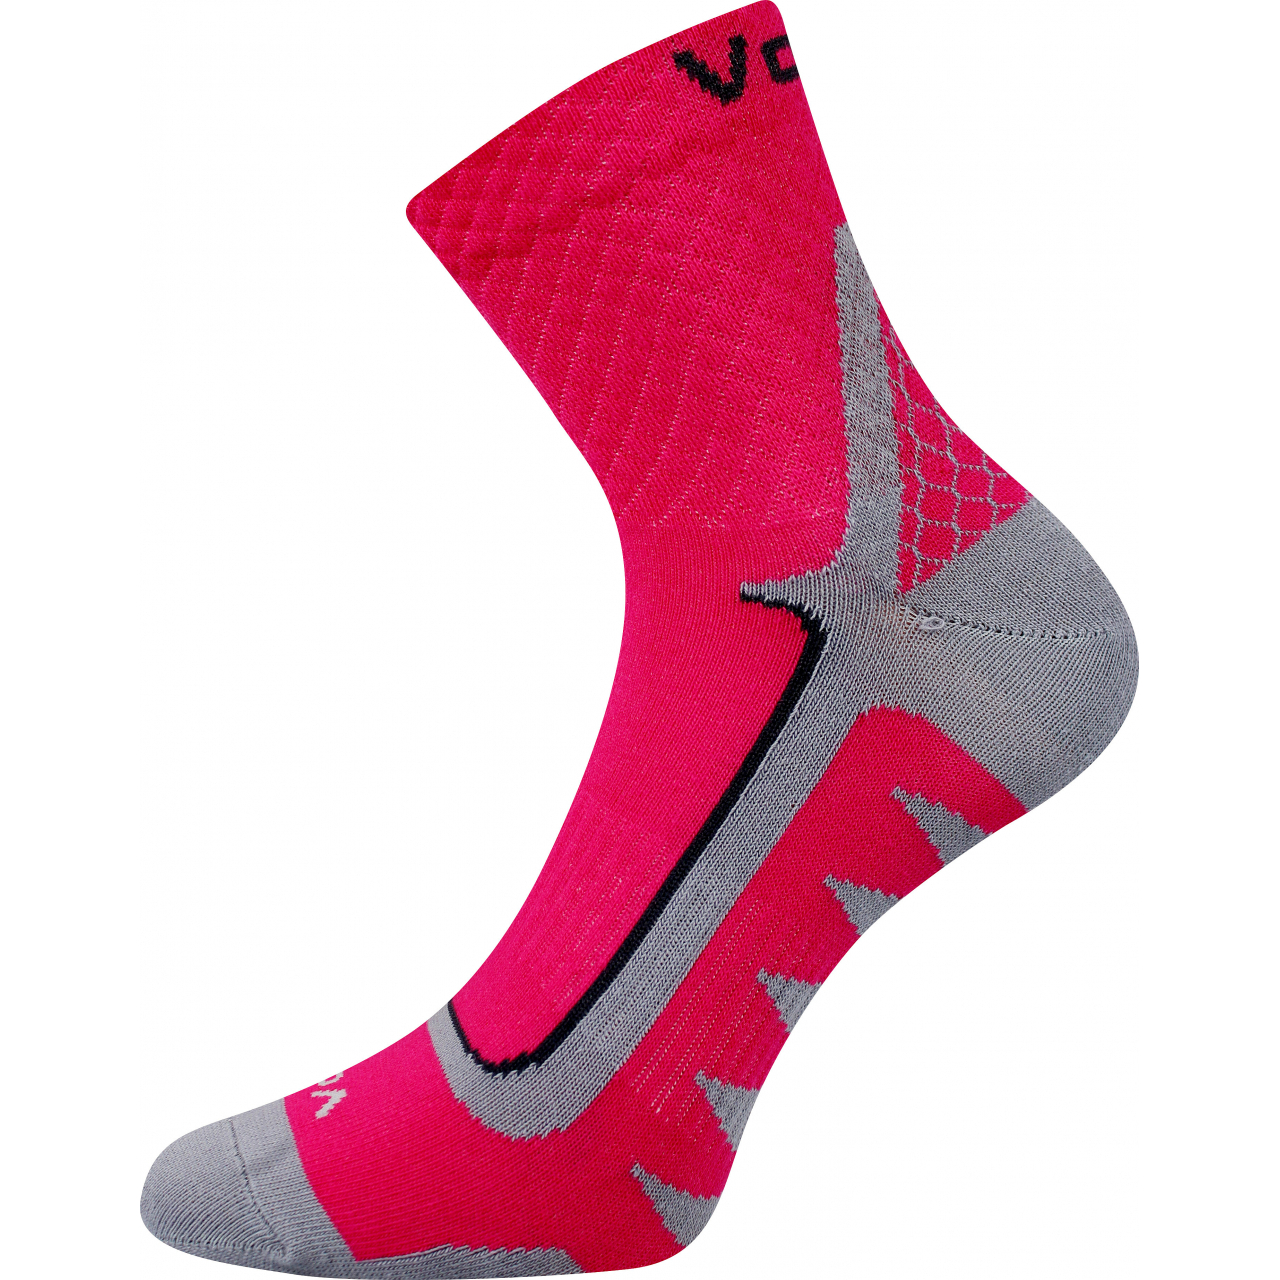 Ponožky sportovní unisex Voxx Kryptox - tmavě růžové, 39-42